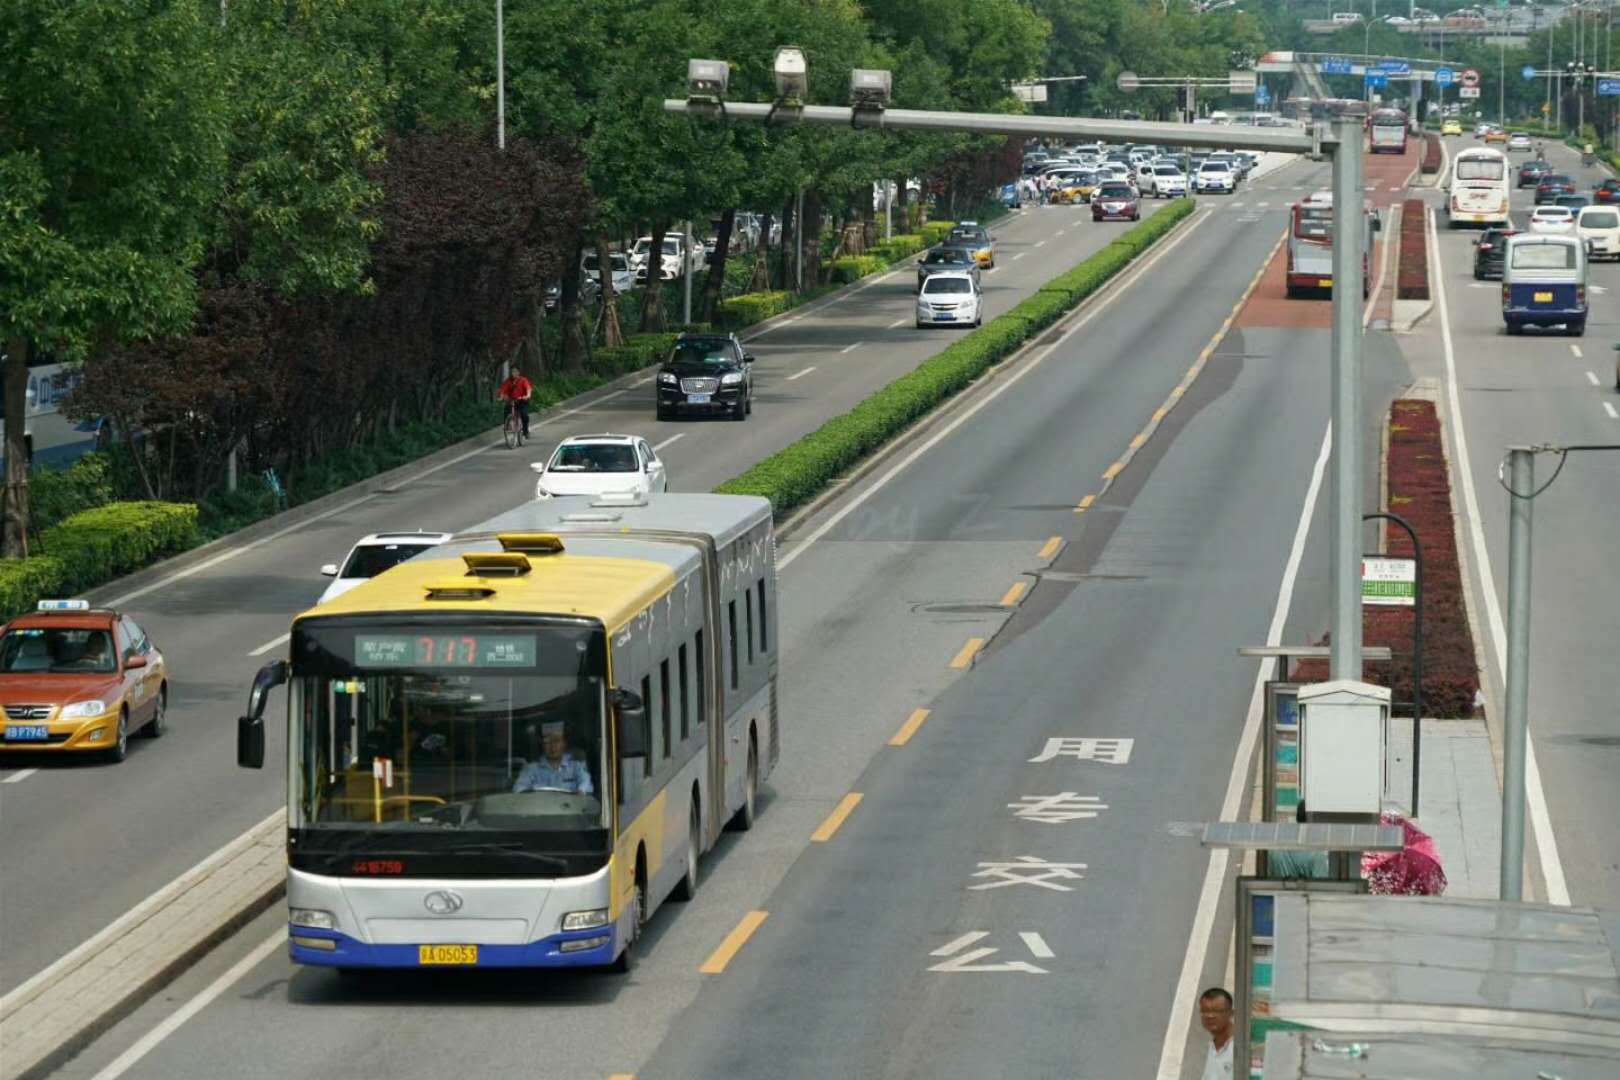 时过境迁,北京巴士公司早已与北京公交集团合并,而白颐路也被改为